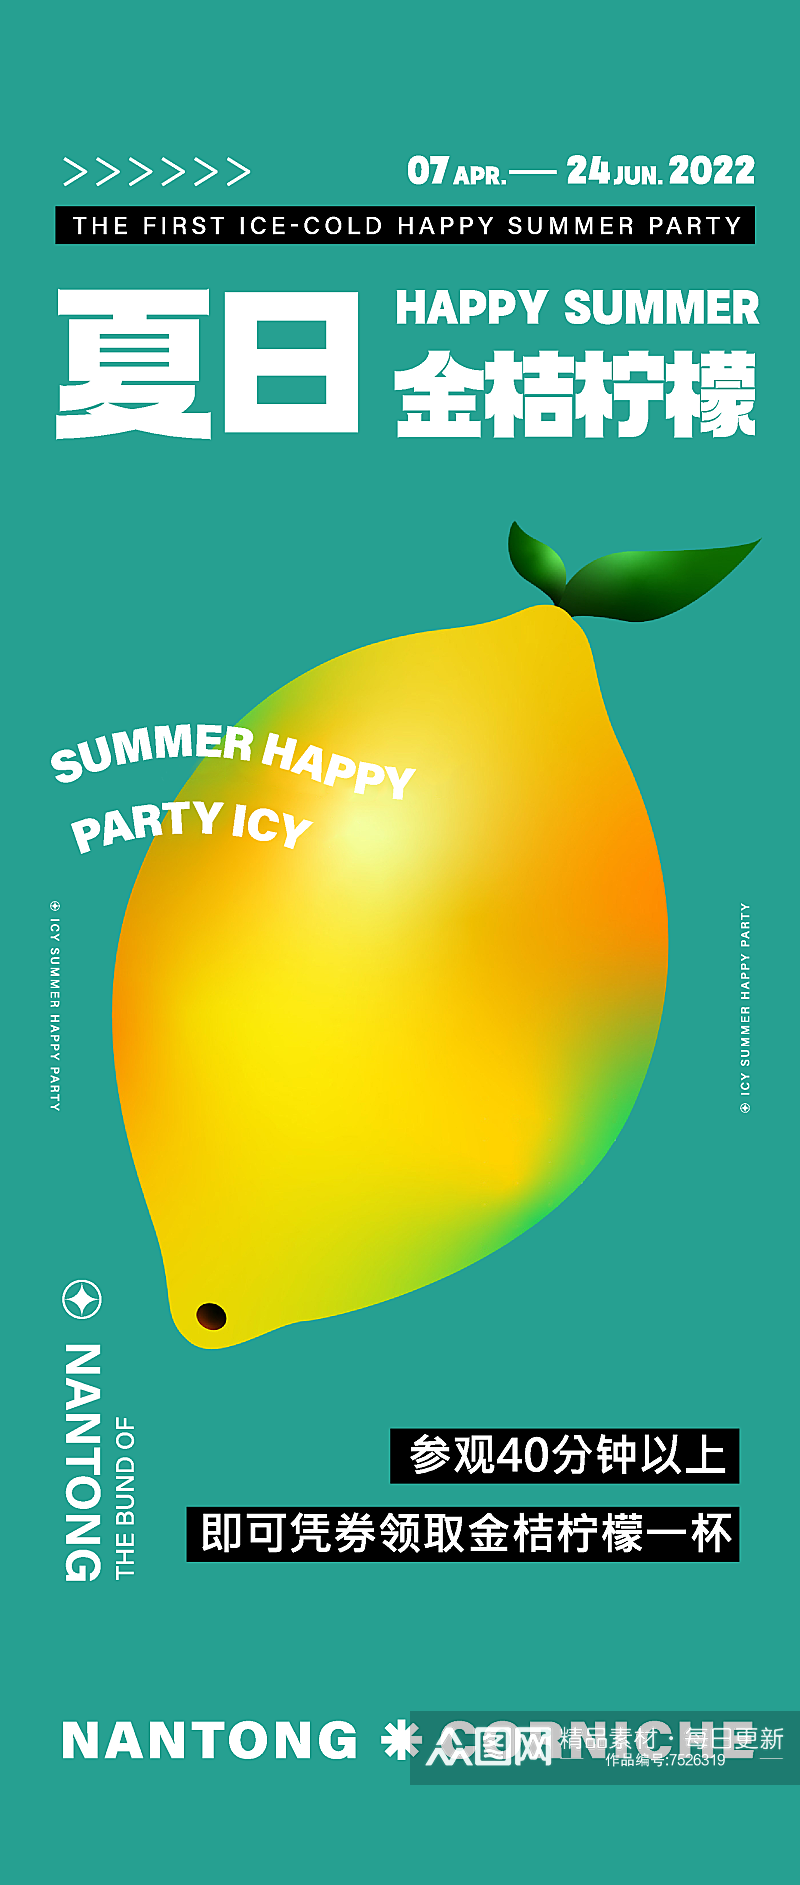 彩色创意夏季派对海报设计素材